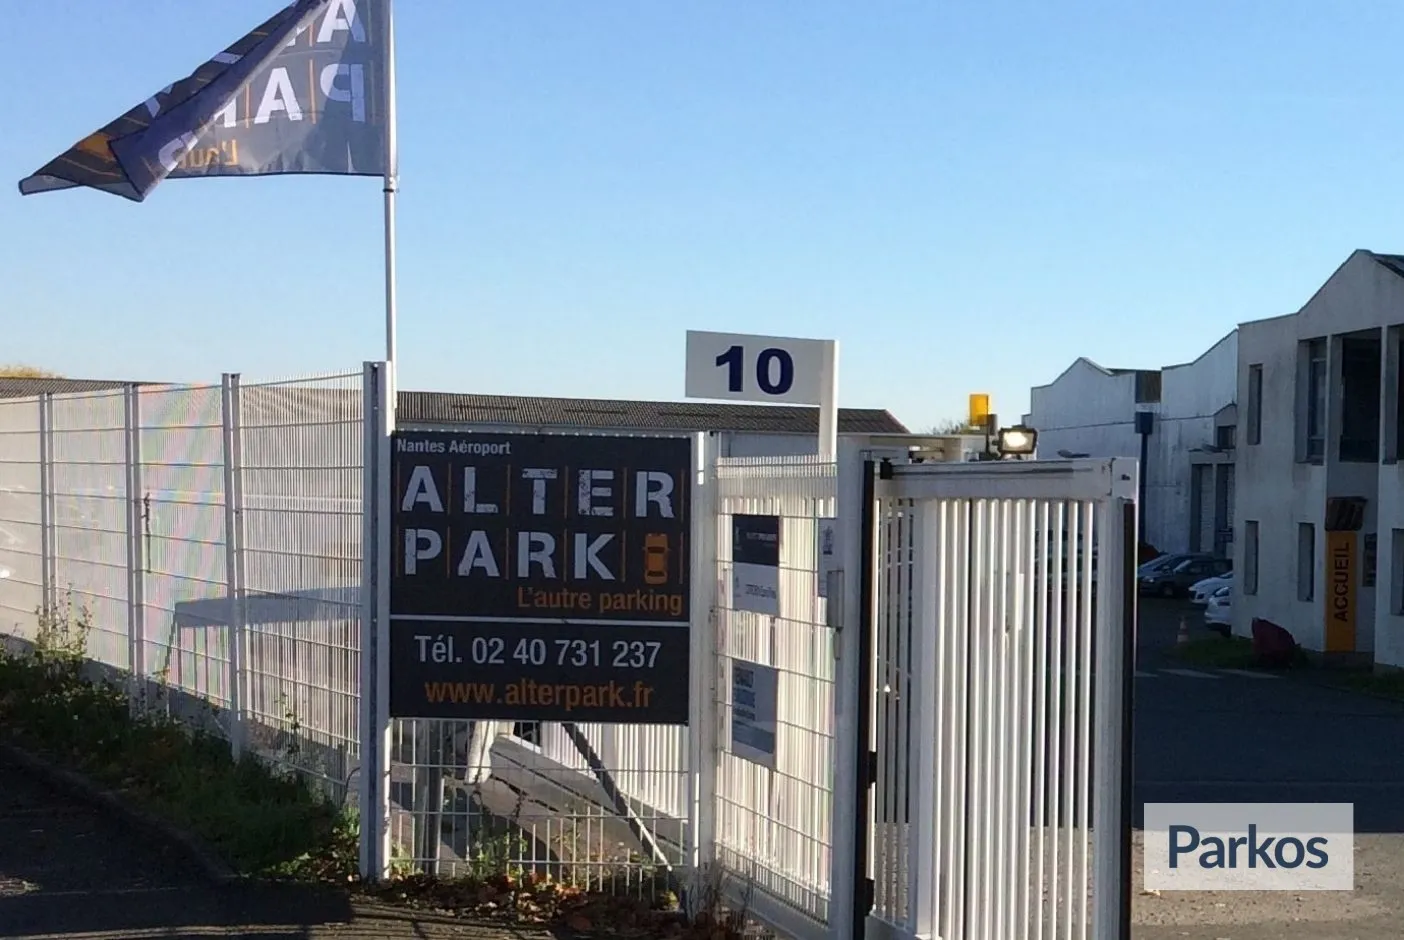 Alterpark Nantes - Parking Aéroport Nantes - picture 1